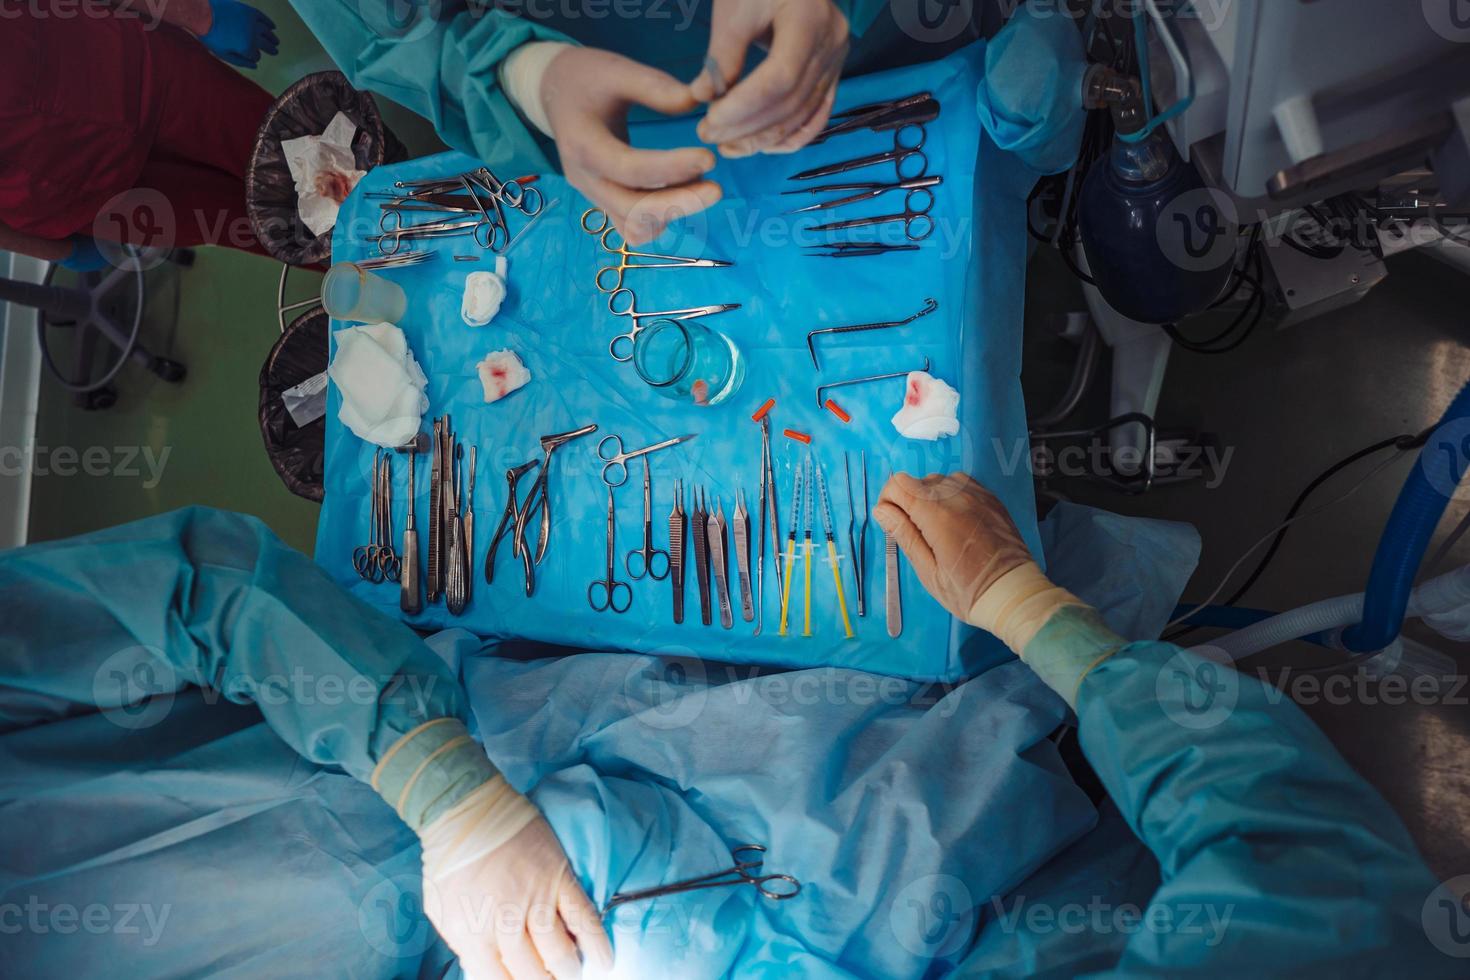 los instrumentos de cirugía en quirófano. foto